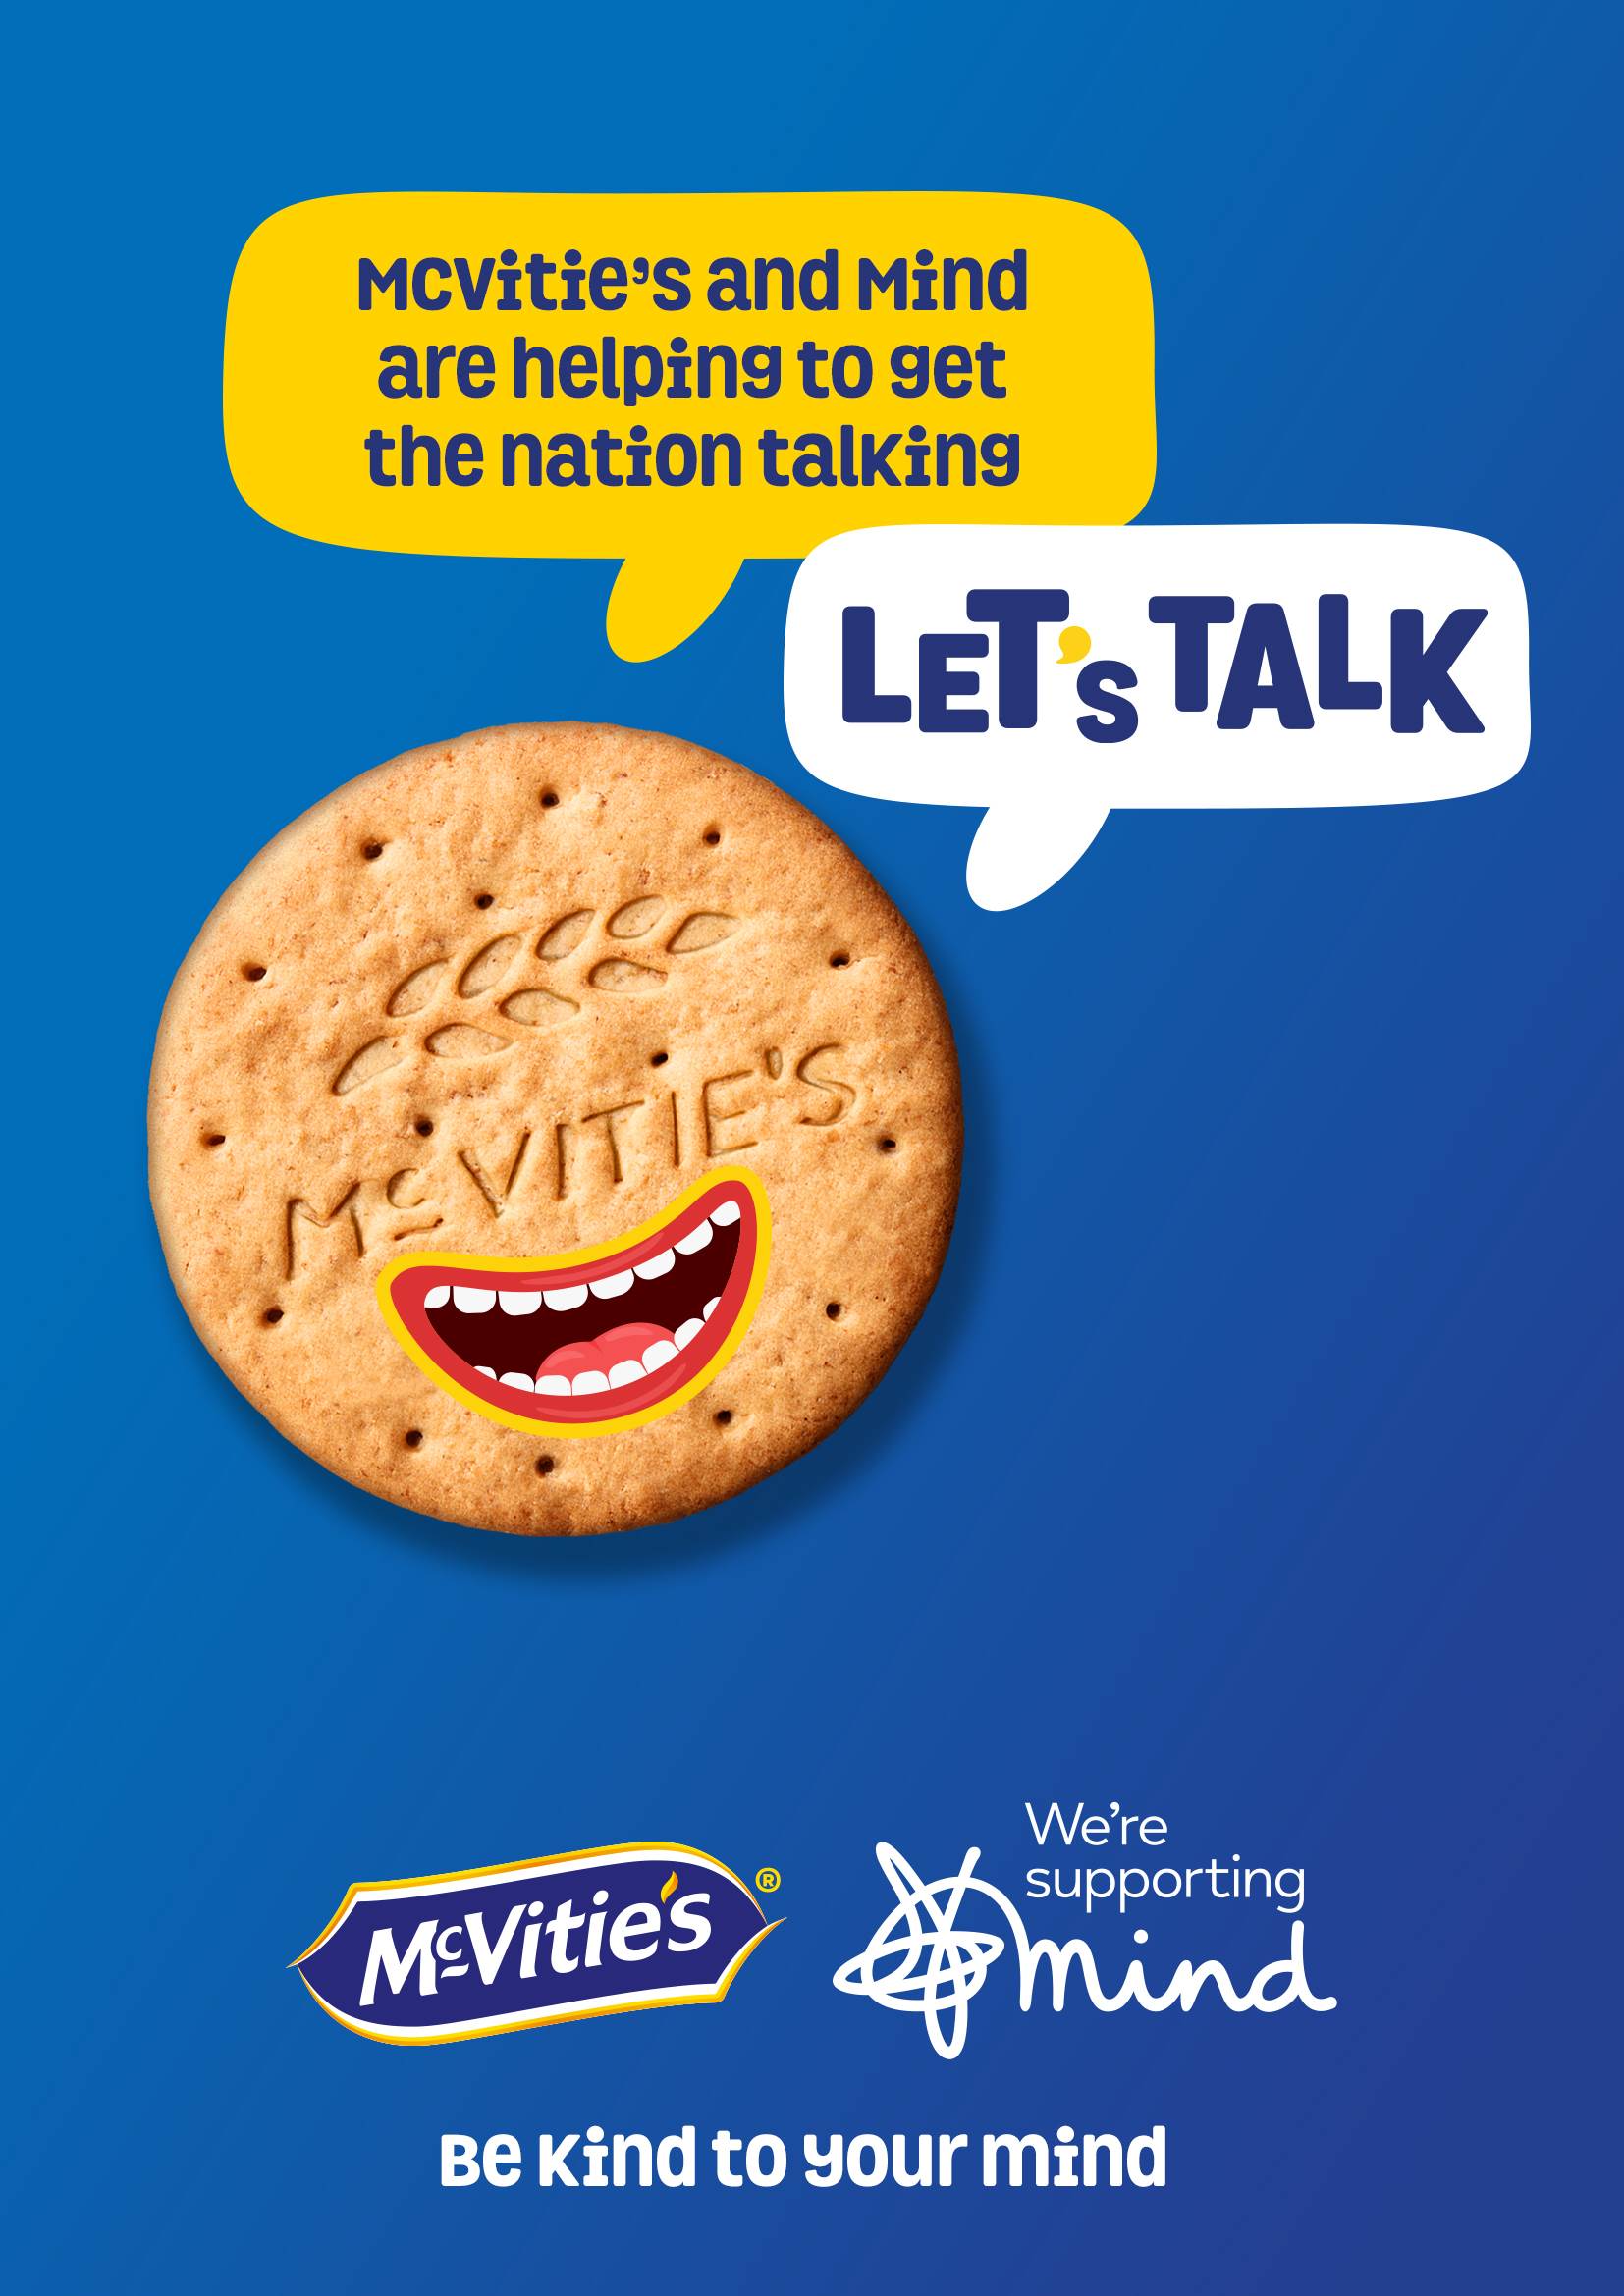 McVitie's Let's Talk Campaign